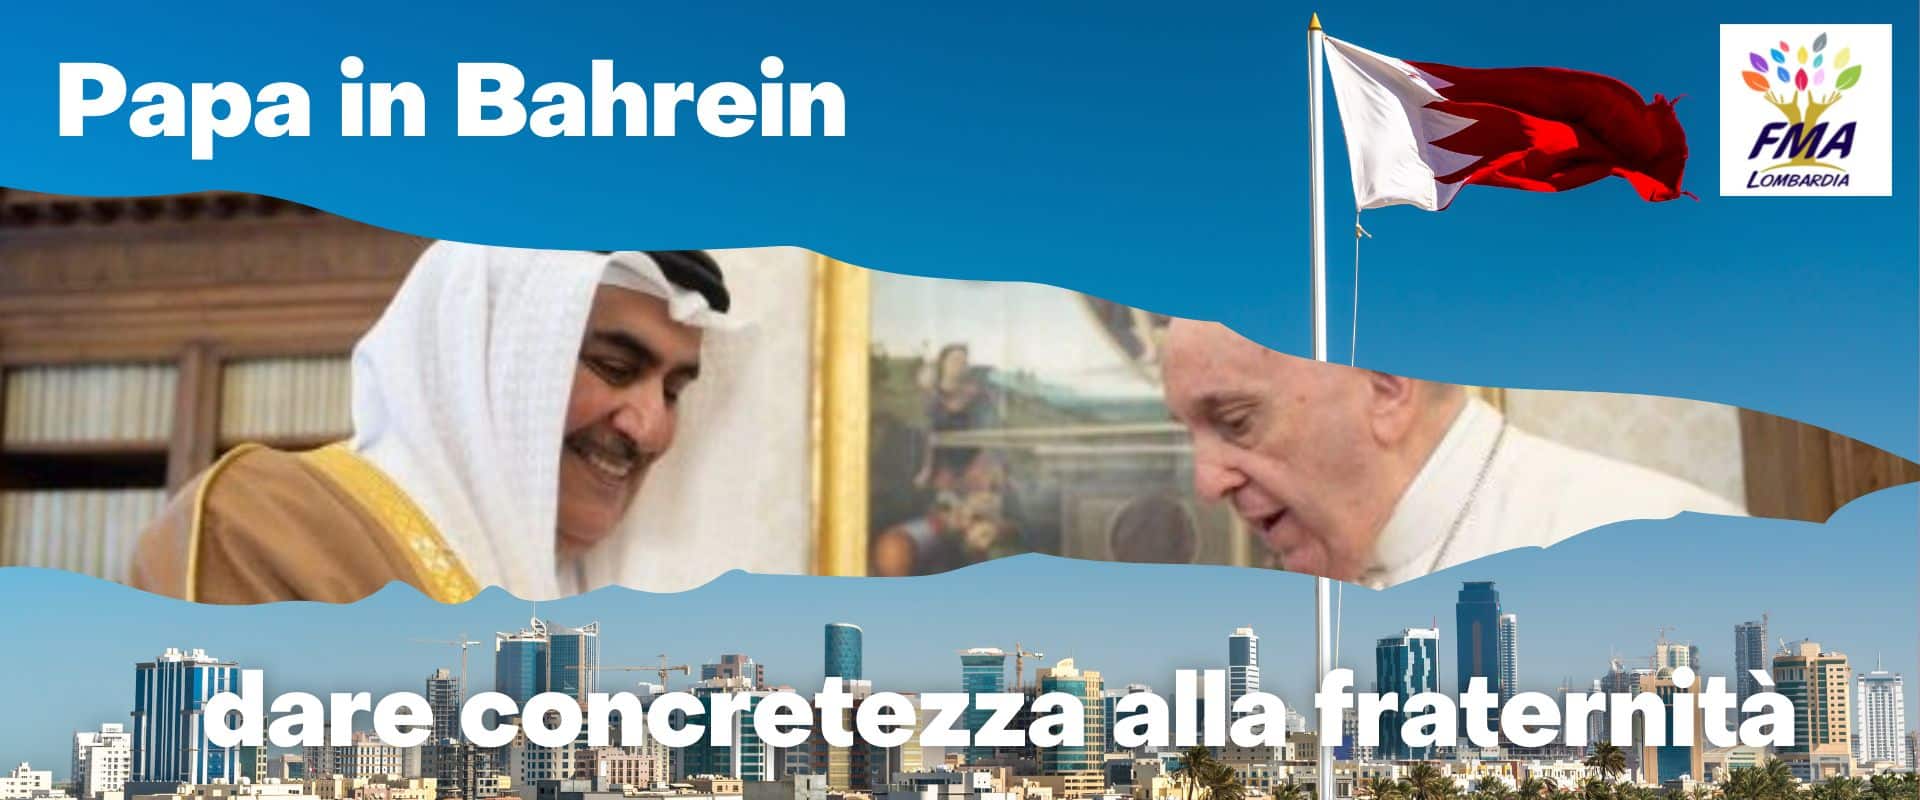 Papa in Bahrein: dare concretezza alla fraternità